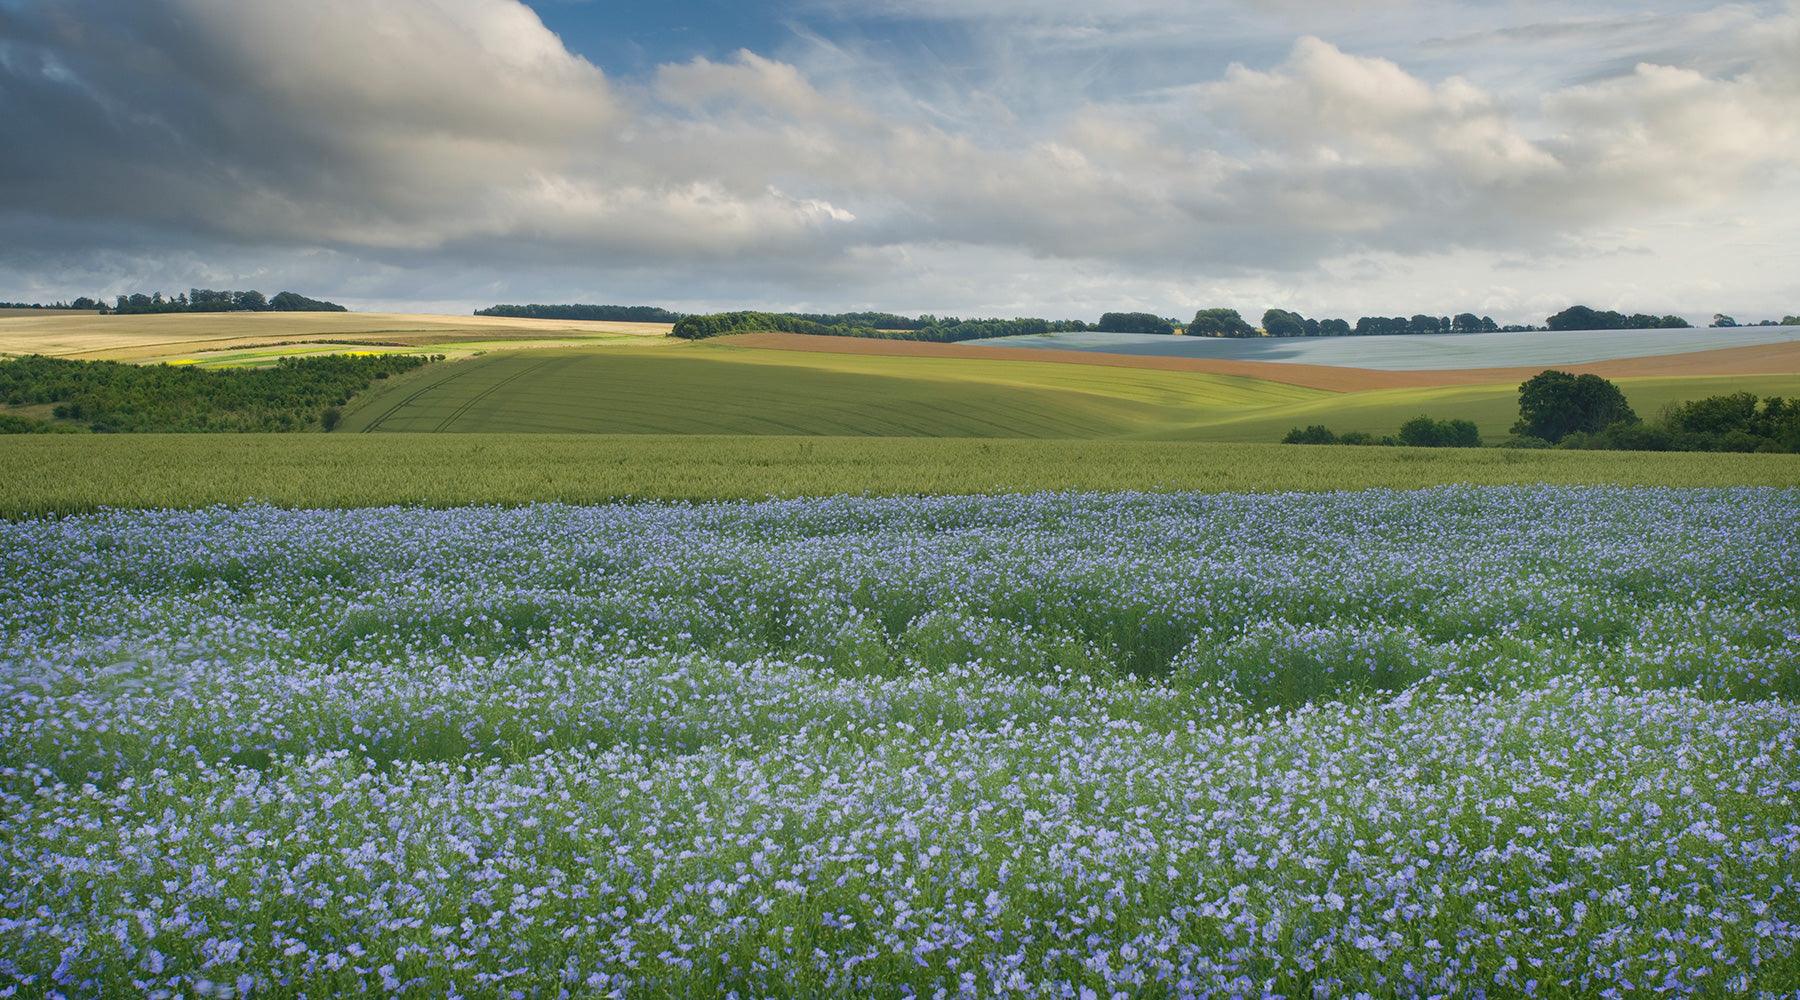 Flax fields